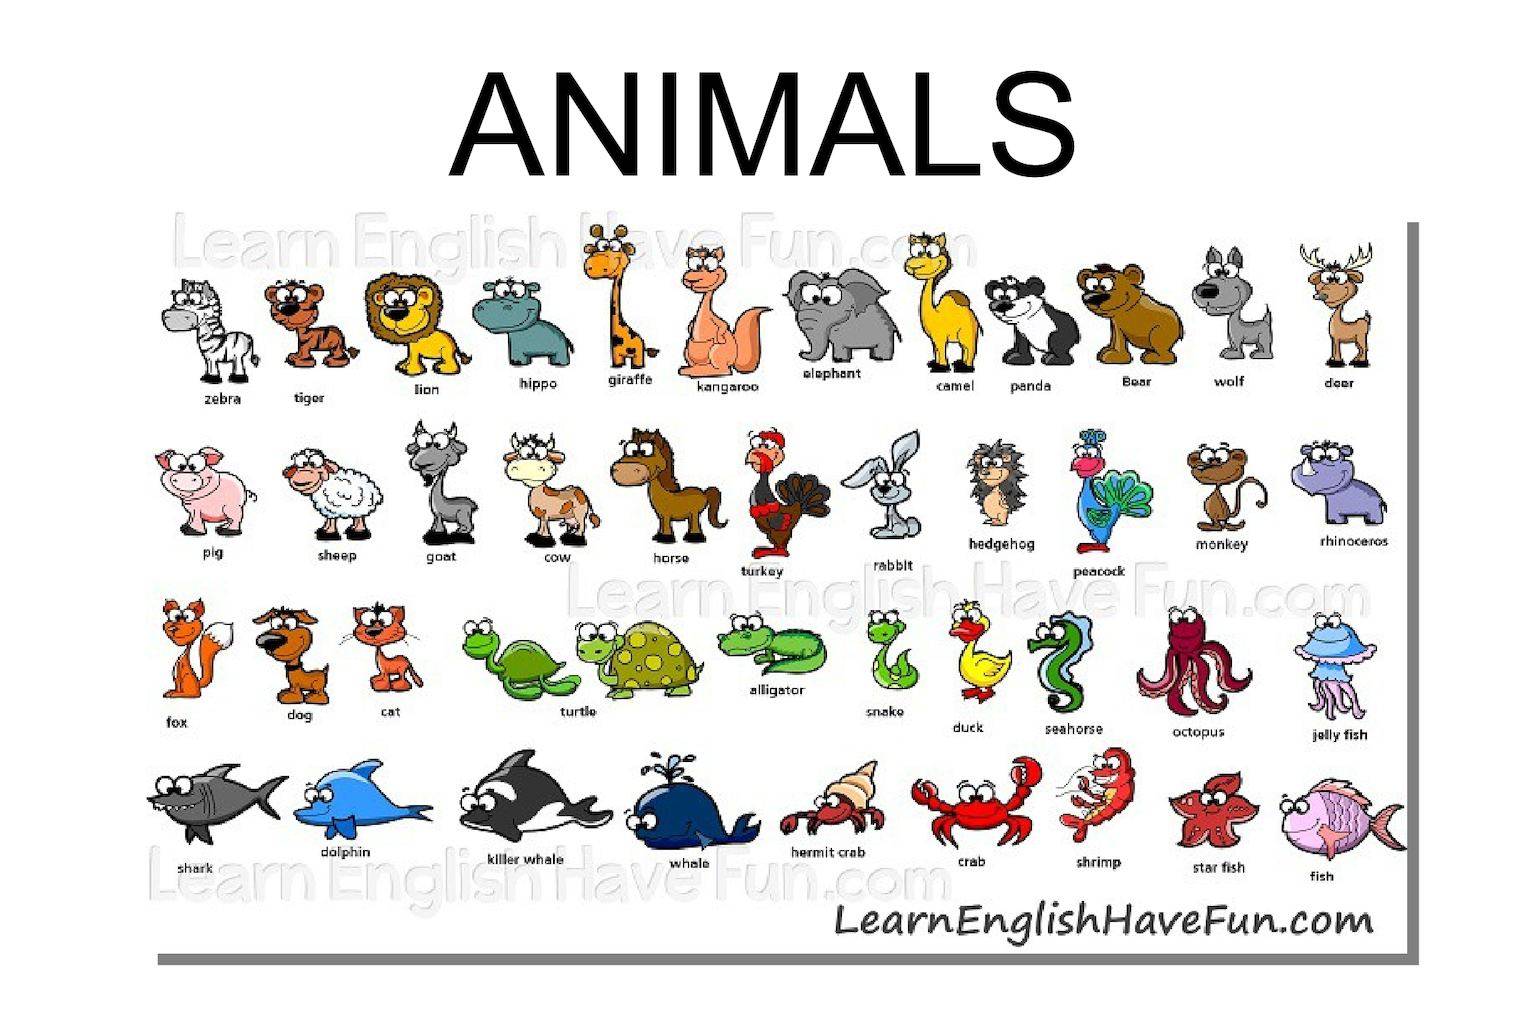 Животные на английском языке с переводом на русский